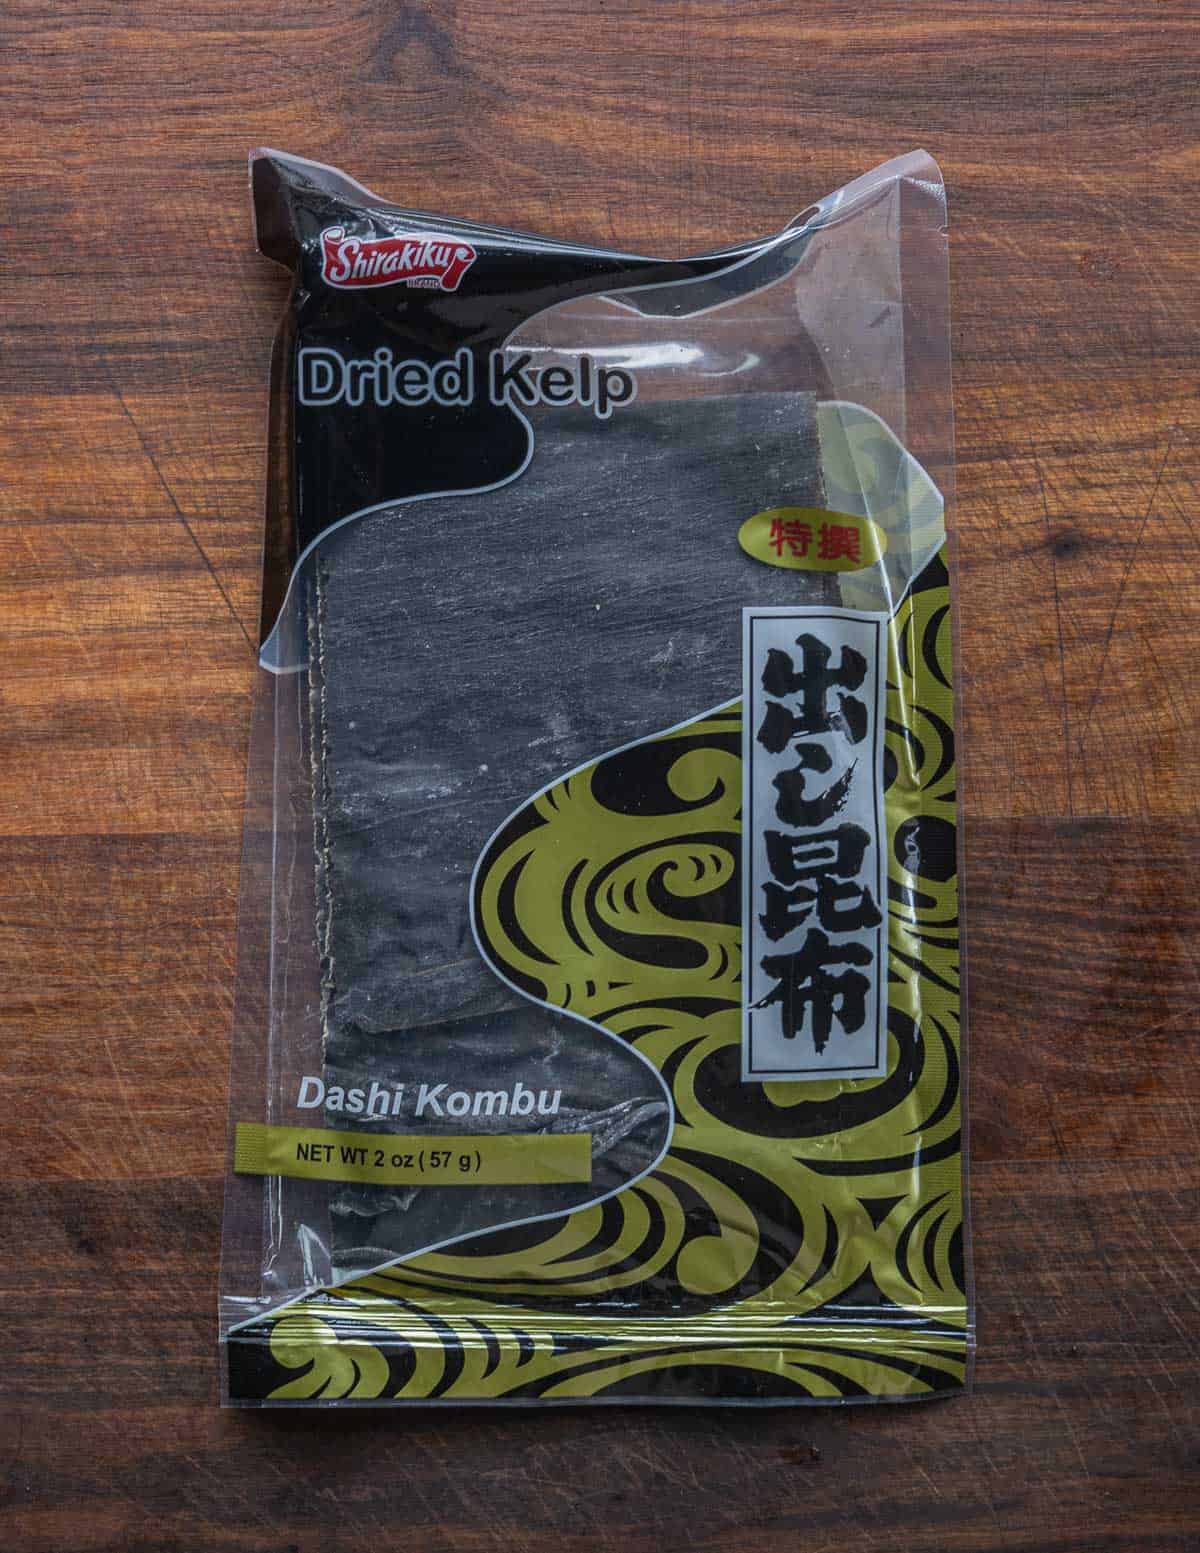 A bag of kombu for making dashi. 